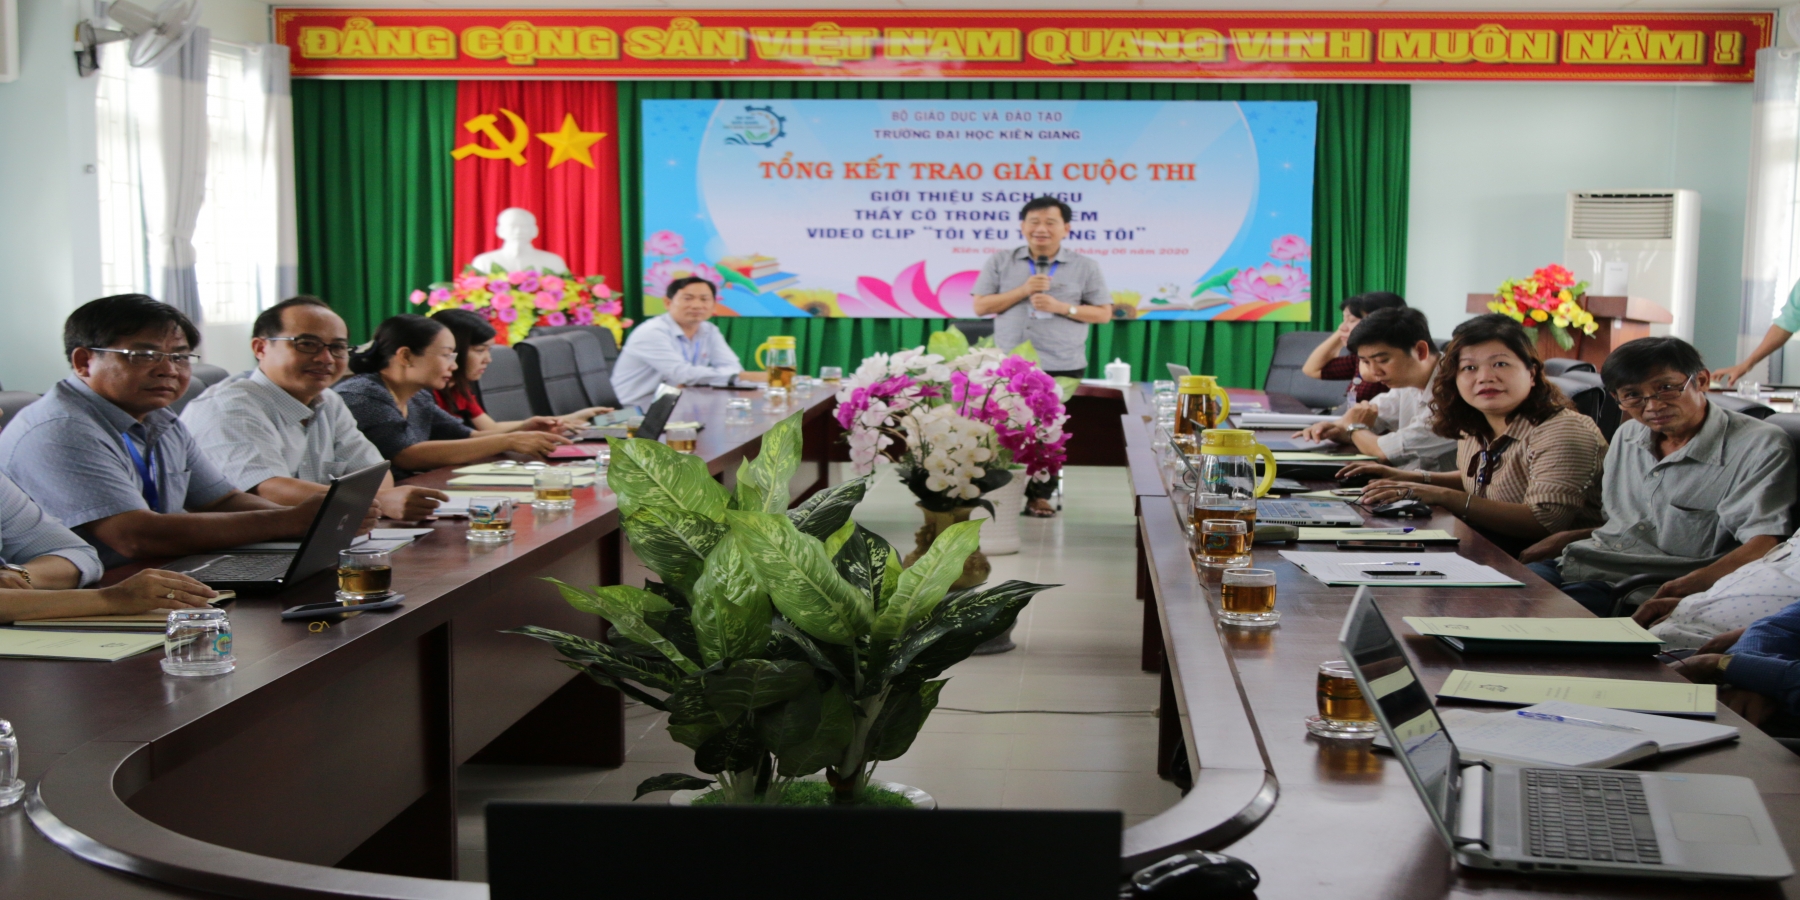 Tổ chức tập huấn công tác xây dựng chiến lược phát triển Trường Đại học Kiên Giang